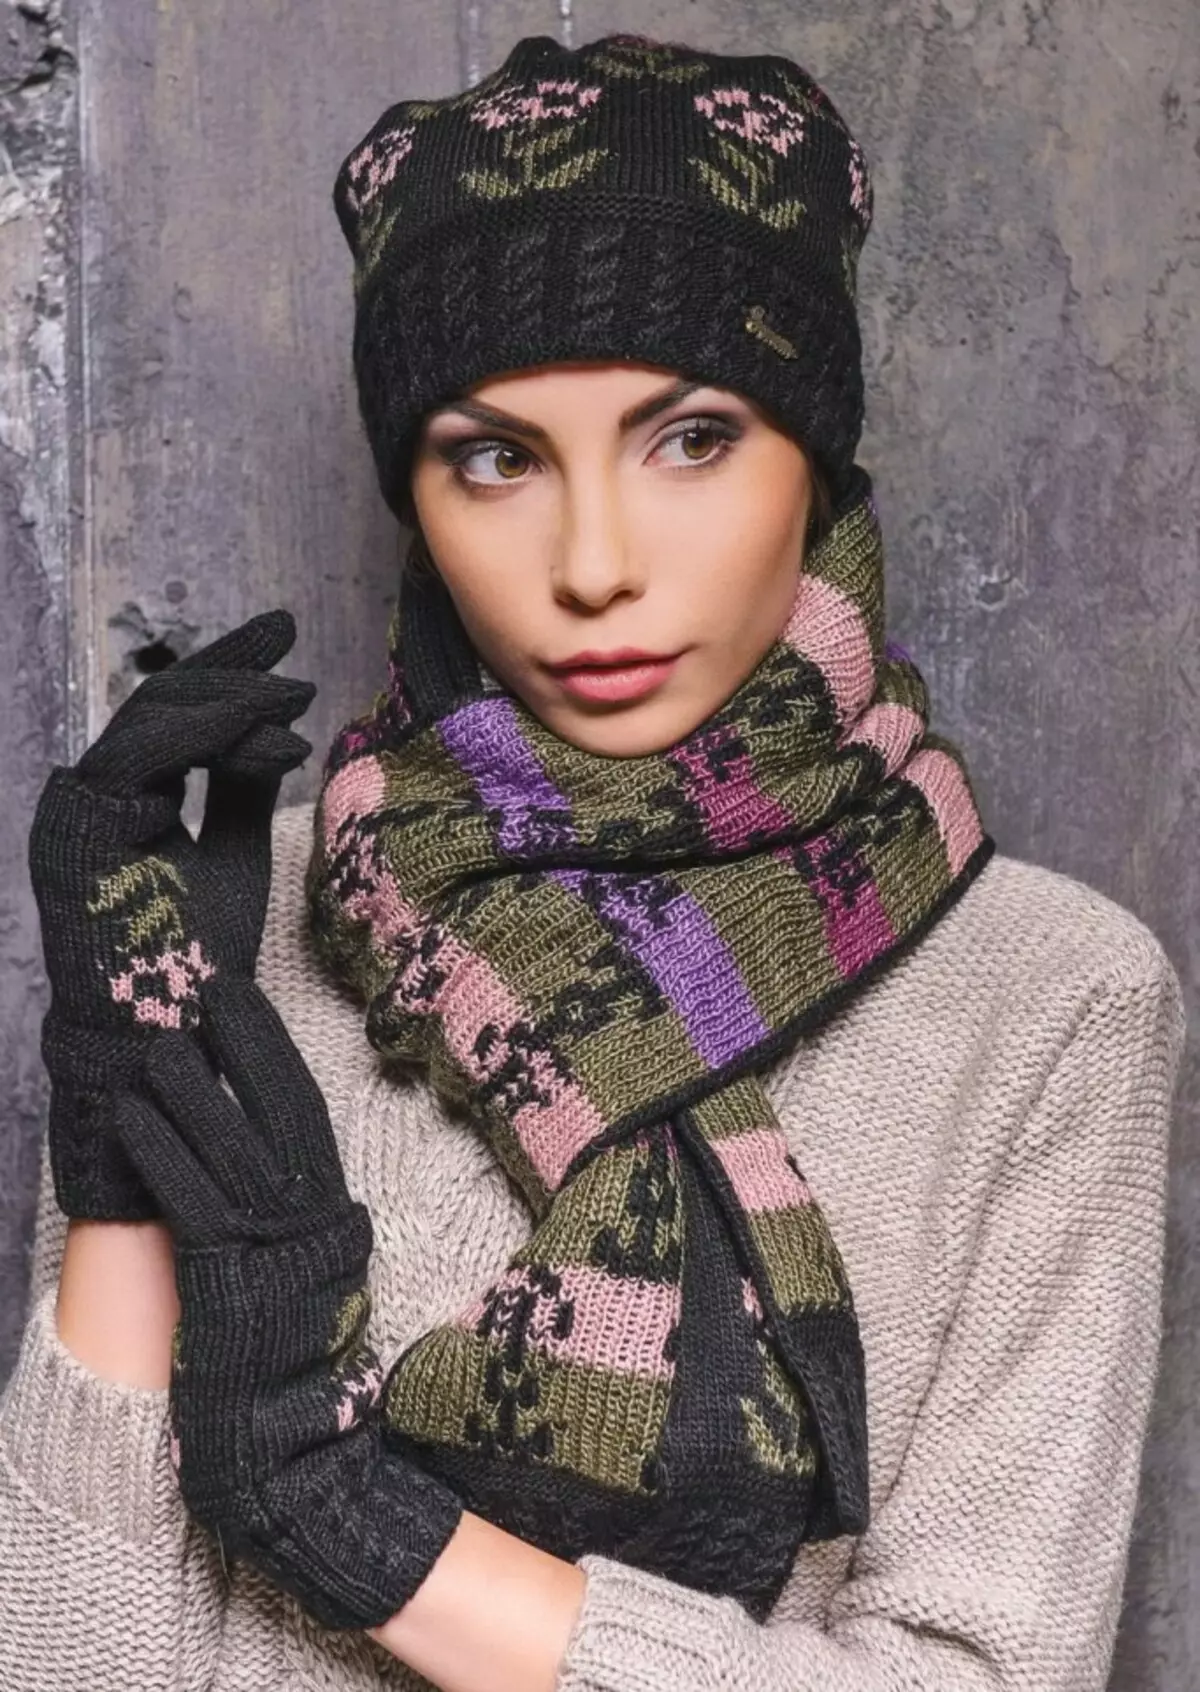 Establiment: barret femení, guants i bufanda (49 fotos): configurat amb logotip, mitenes de punt femení al conjunt 2658_20